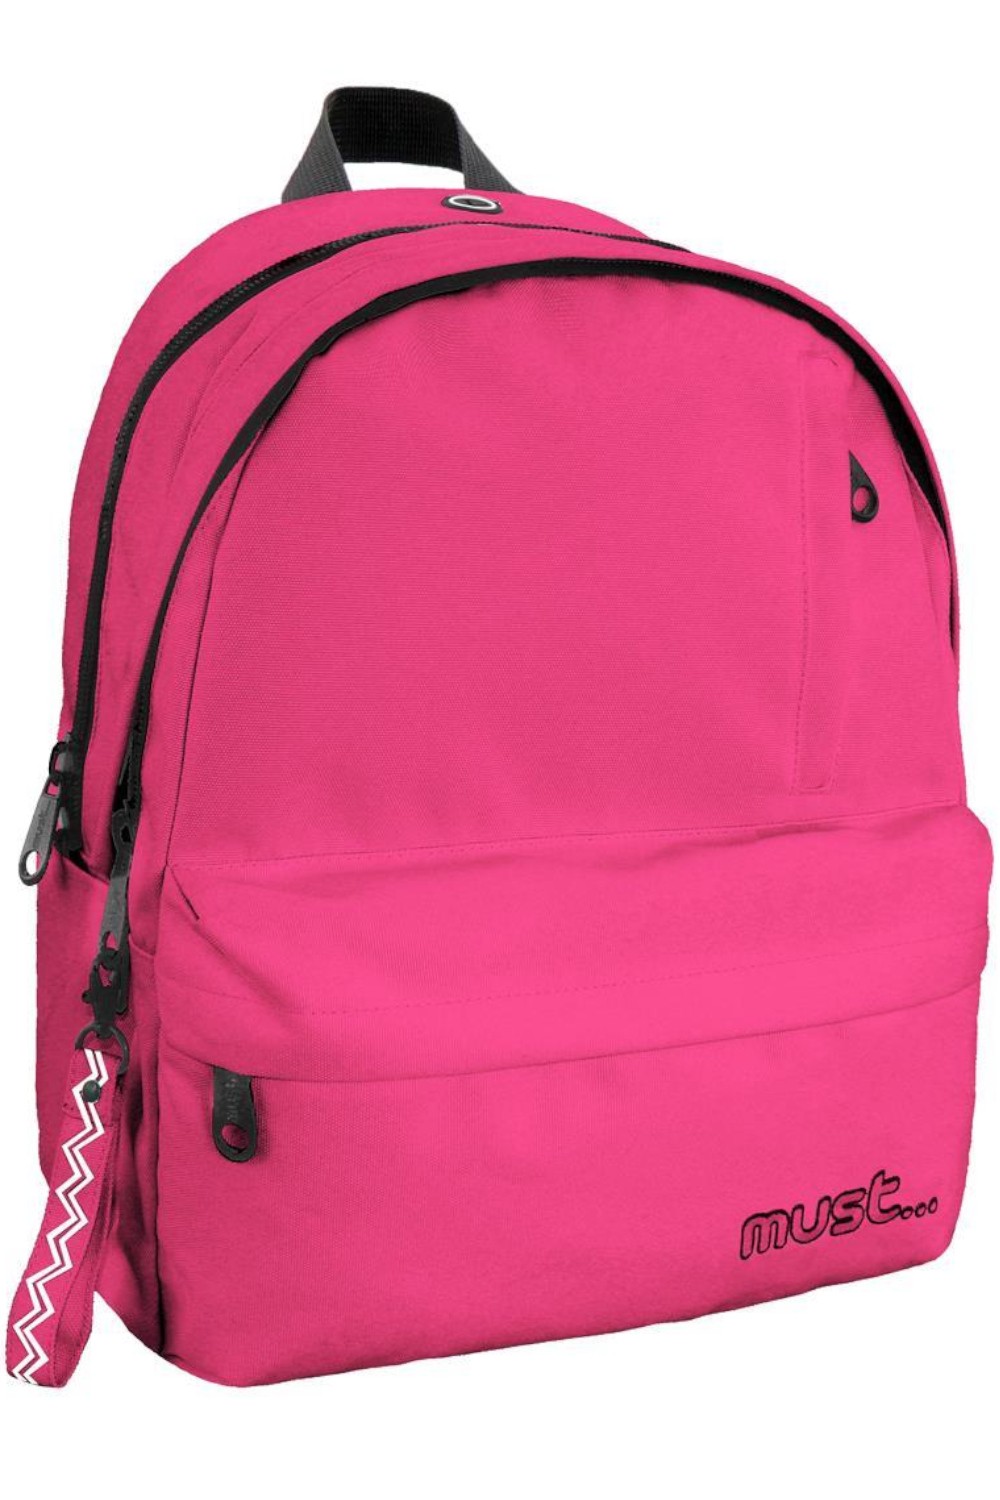 Σχολική Τσάντα Πλάτης Γυμνασίου - Λυκείου Monochrome RPET Ροζ Fluo με 2  Κεντρικές Θήκες Must 584600